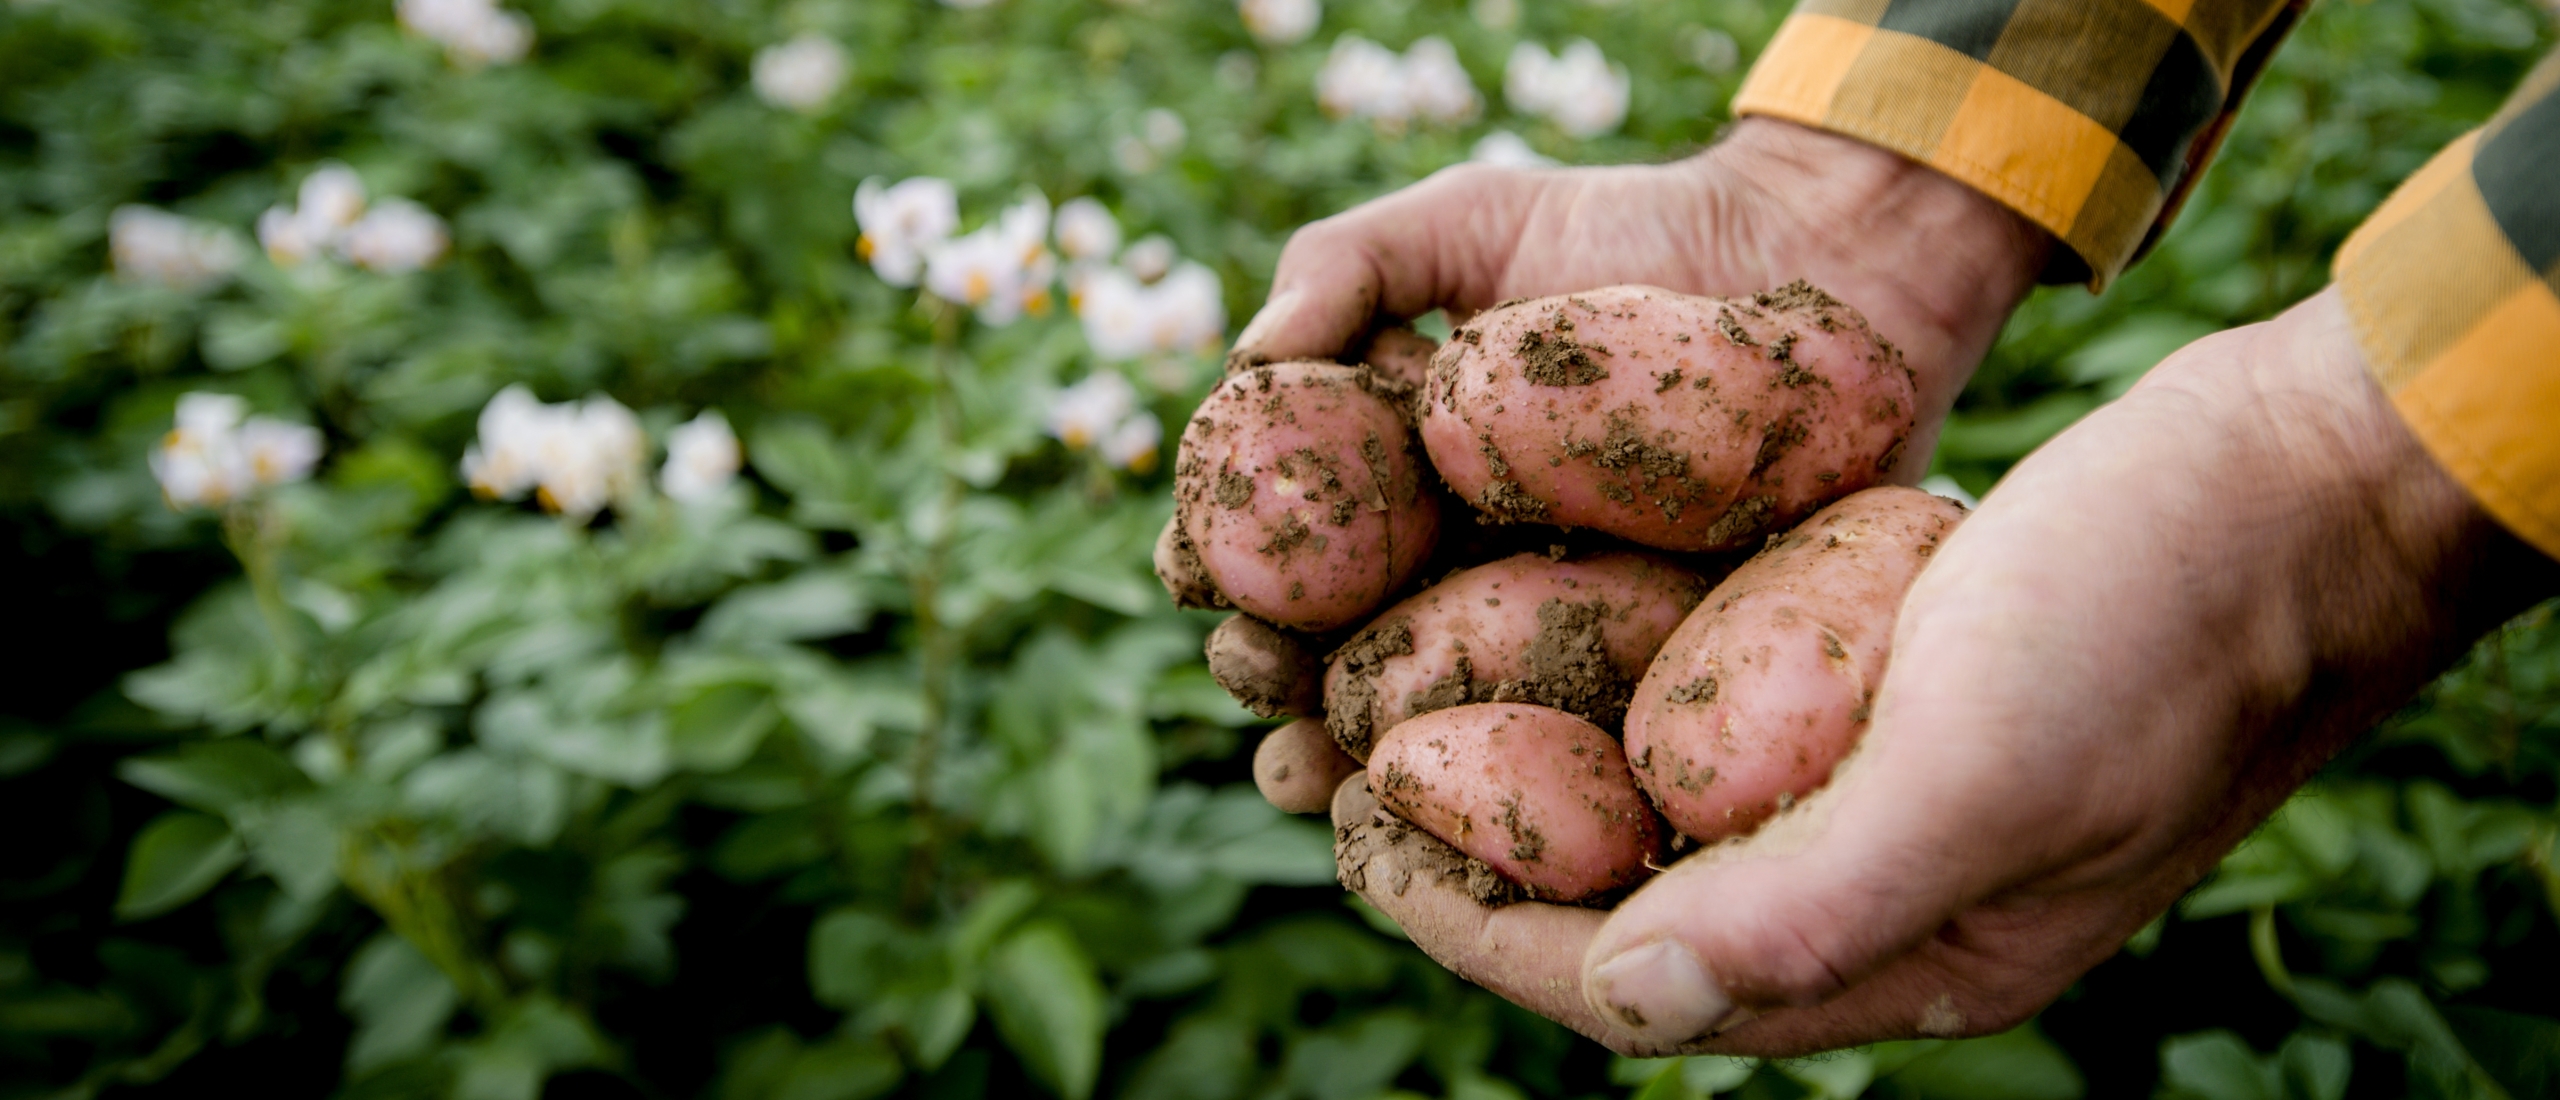 WUR meldt 'doorbraak' tegen aardappelziekte door genbewerking